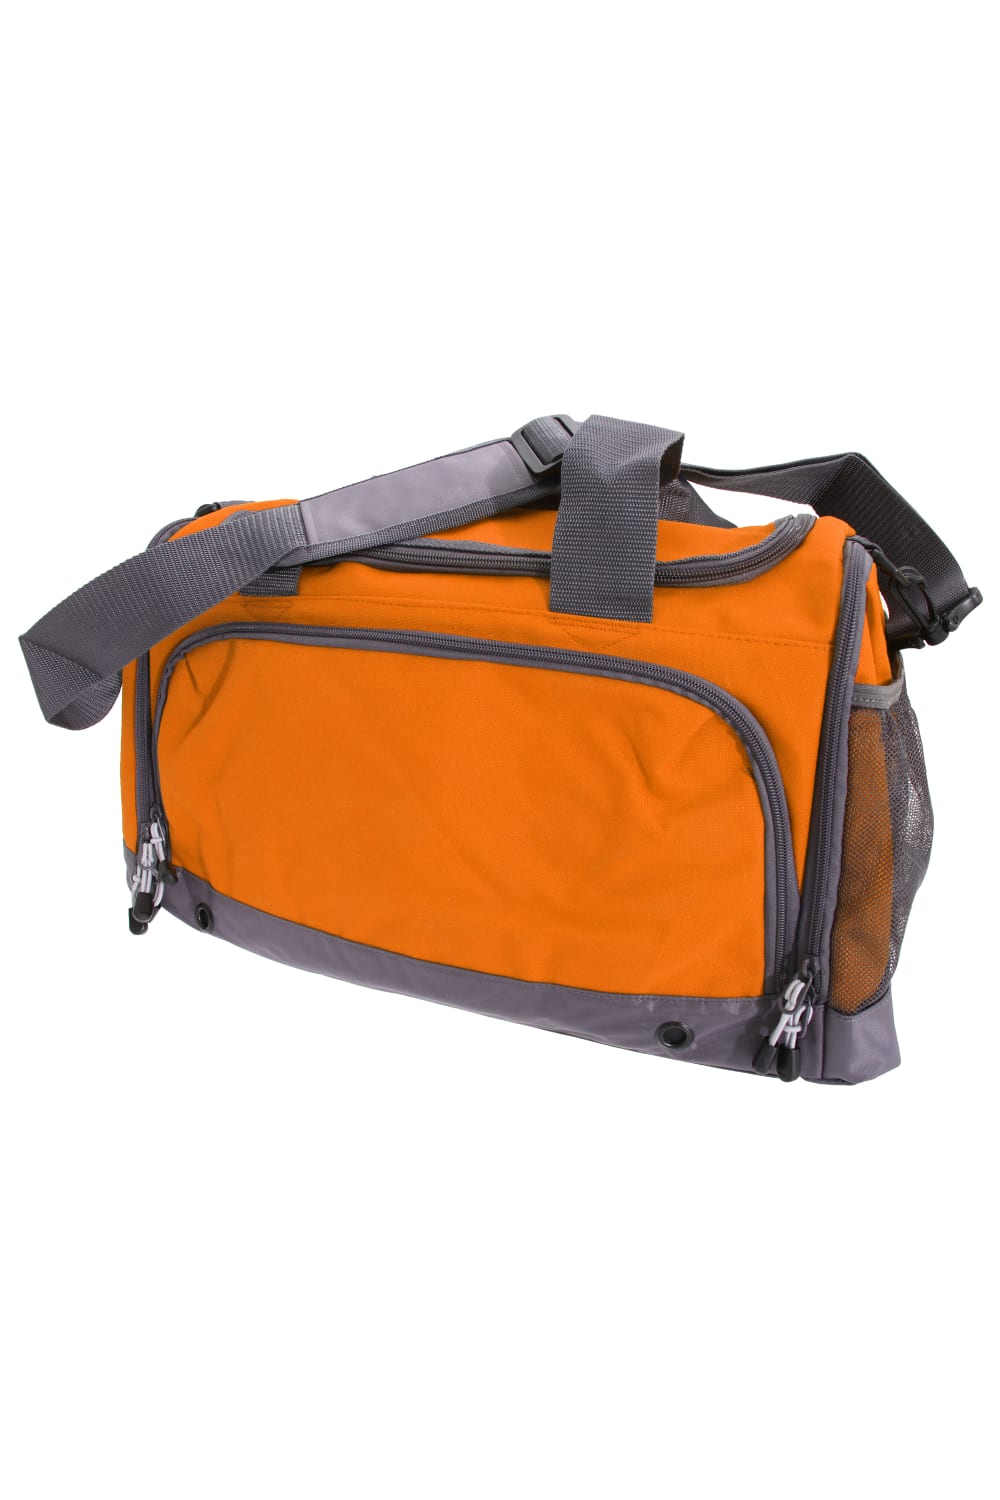 BagBase Sports Holdall / Duffel Bag (Orange) (One Size)